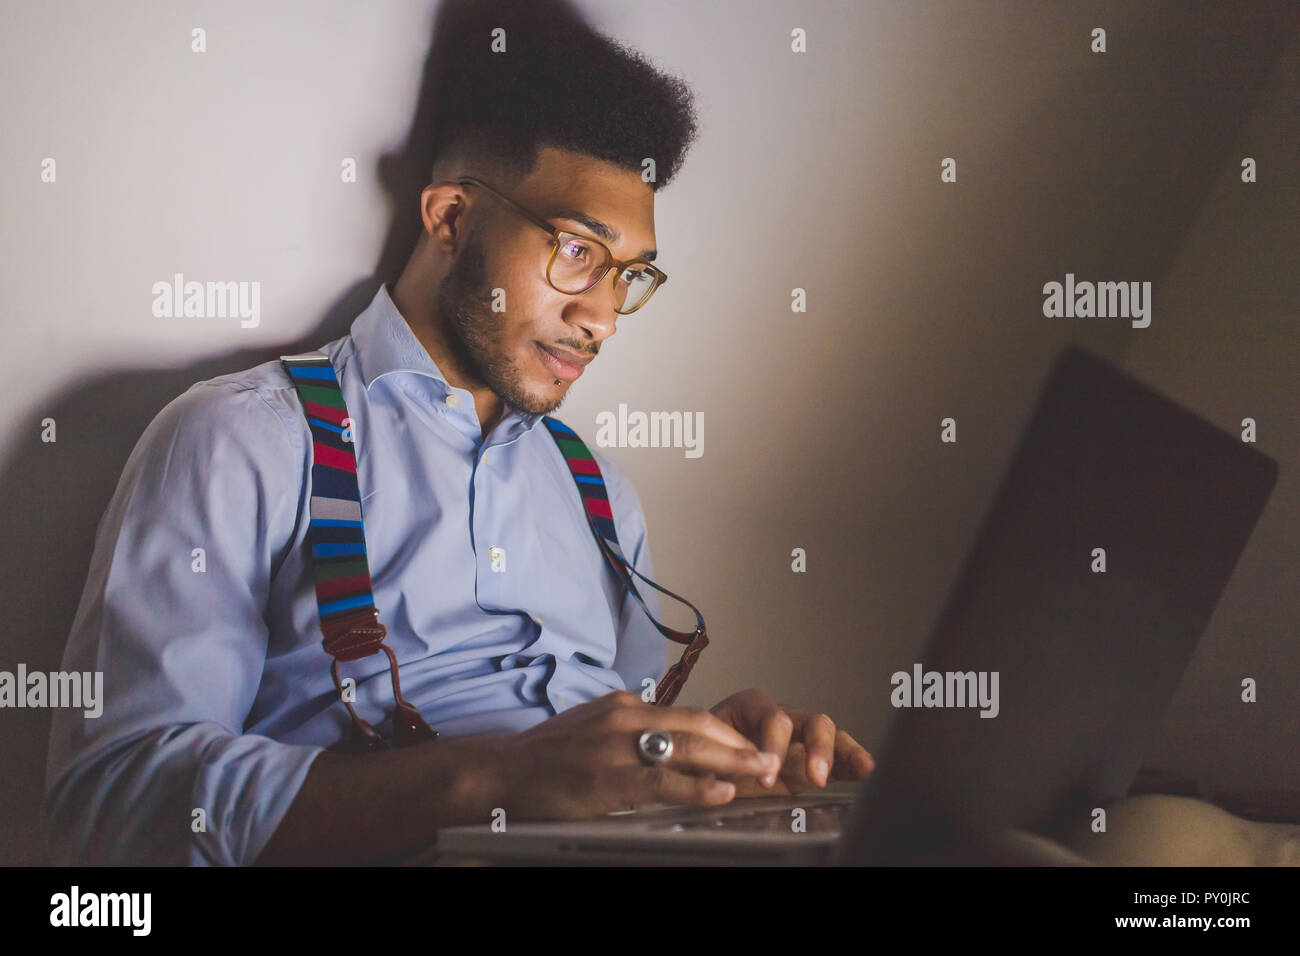 Junge schwarze Mann indoor Sofa mit Laptop - Telearbeit, Business, Technologie Konzept Stockfoto